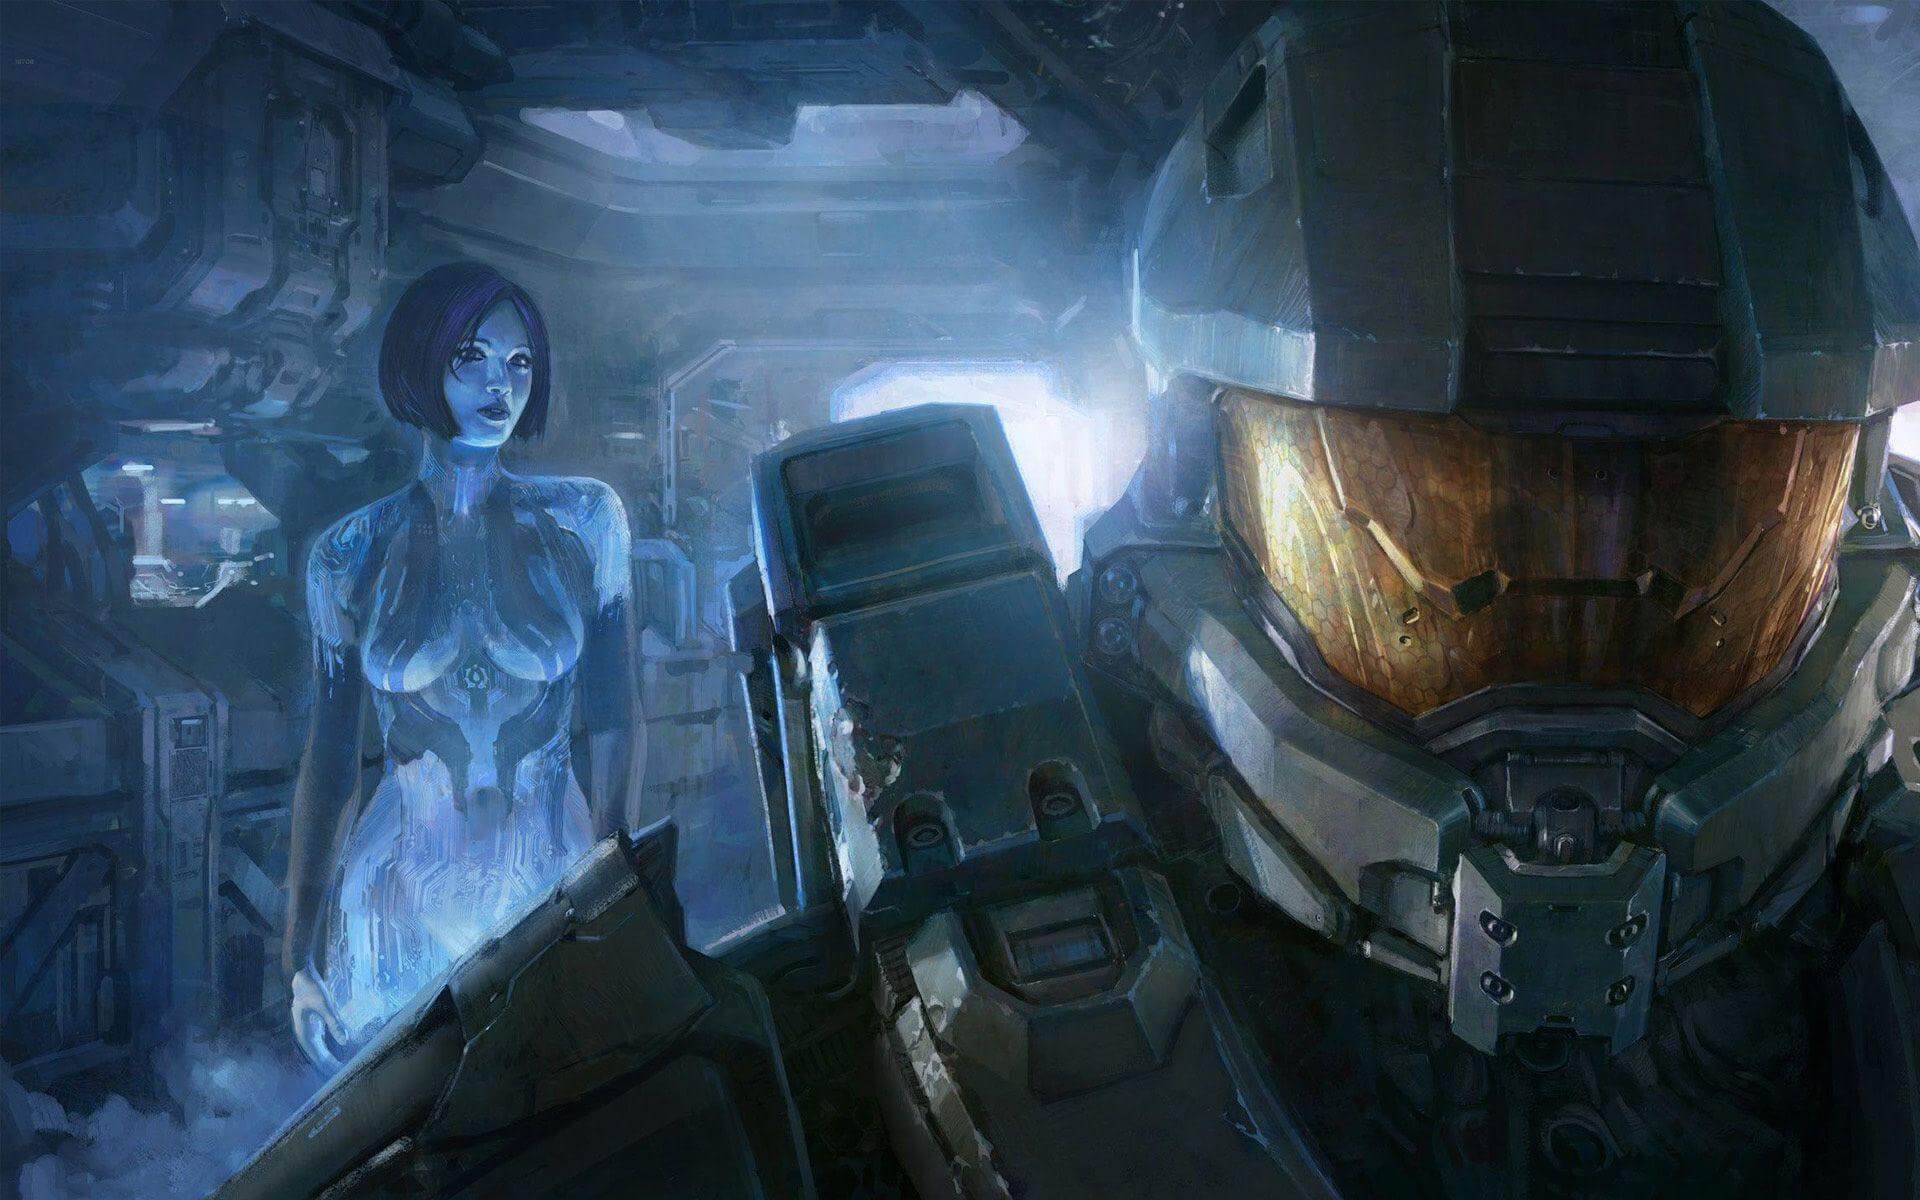 Az eredeti szinkronhang színésznője veszi át Cortana szerepét a Halo-sorozatban